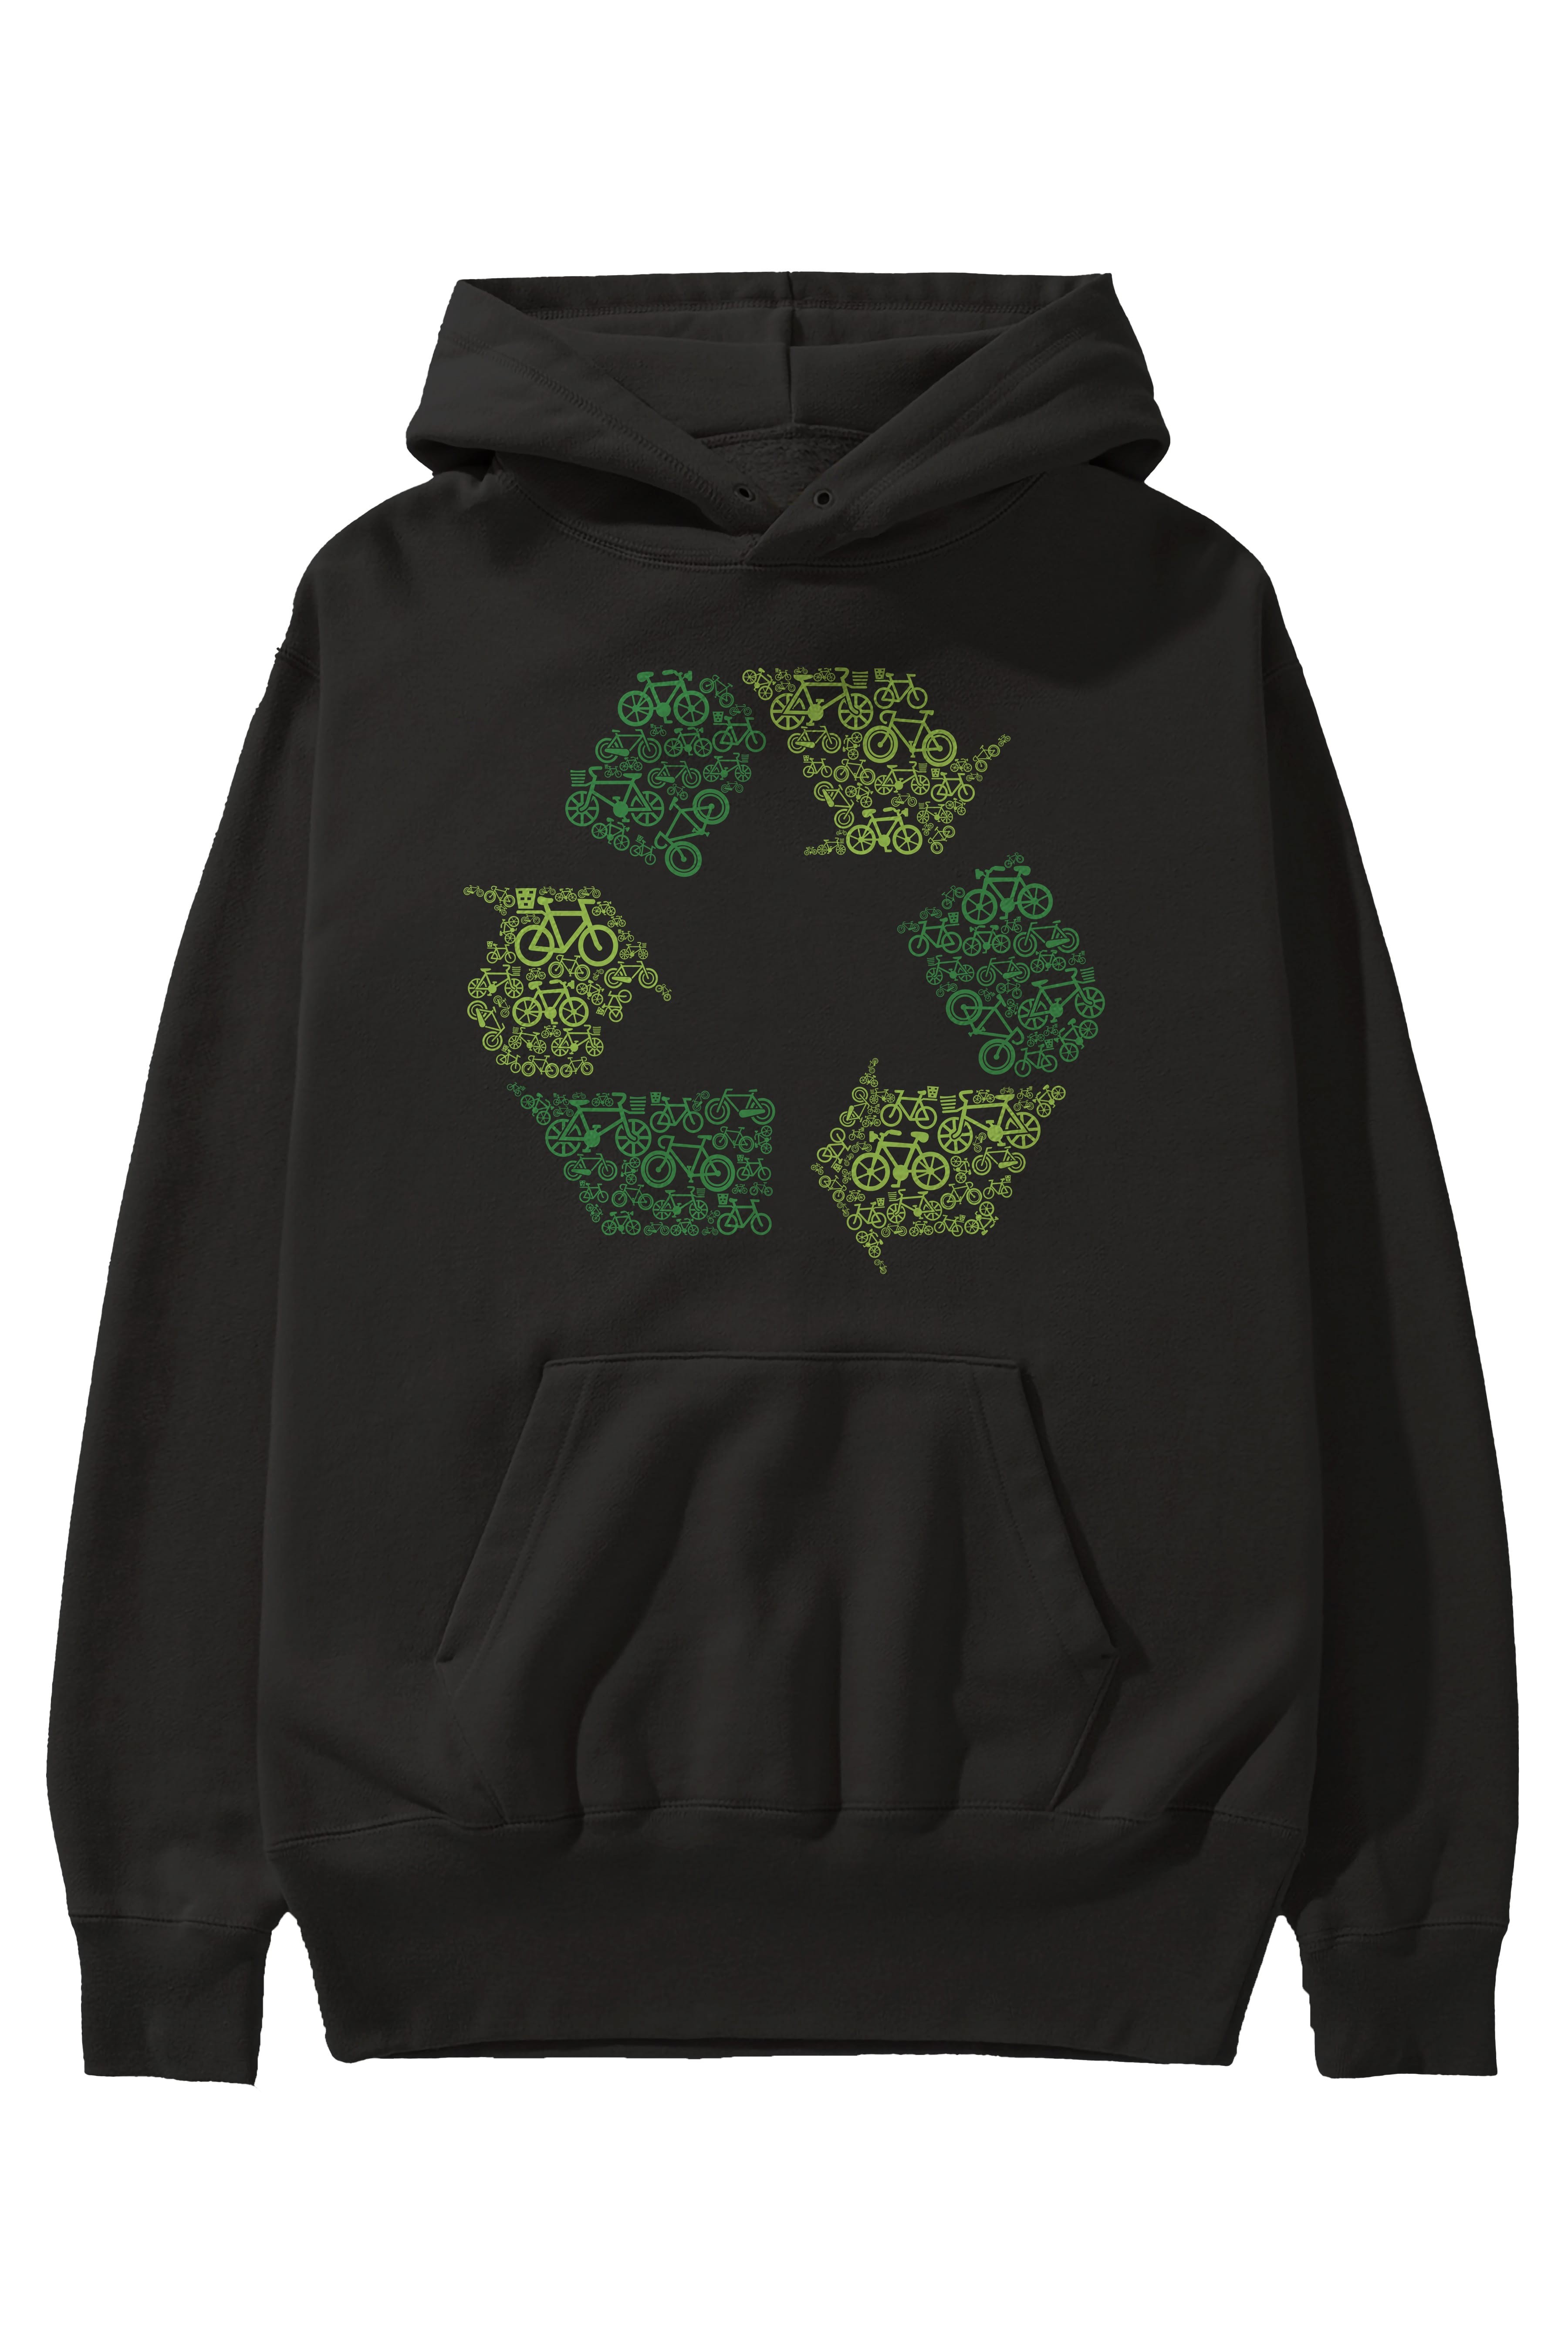 Recycling Ön Baskılı Hoodie Oversize Kapüşonlu Sweatshirt Erkek Kadın Unisex